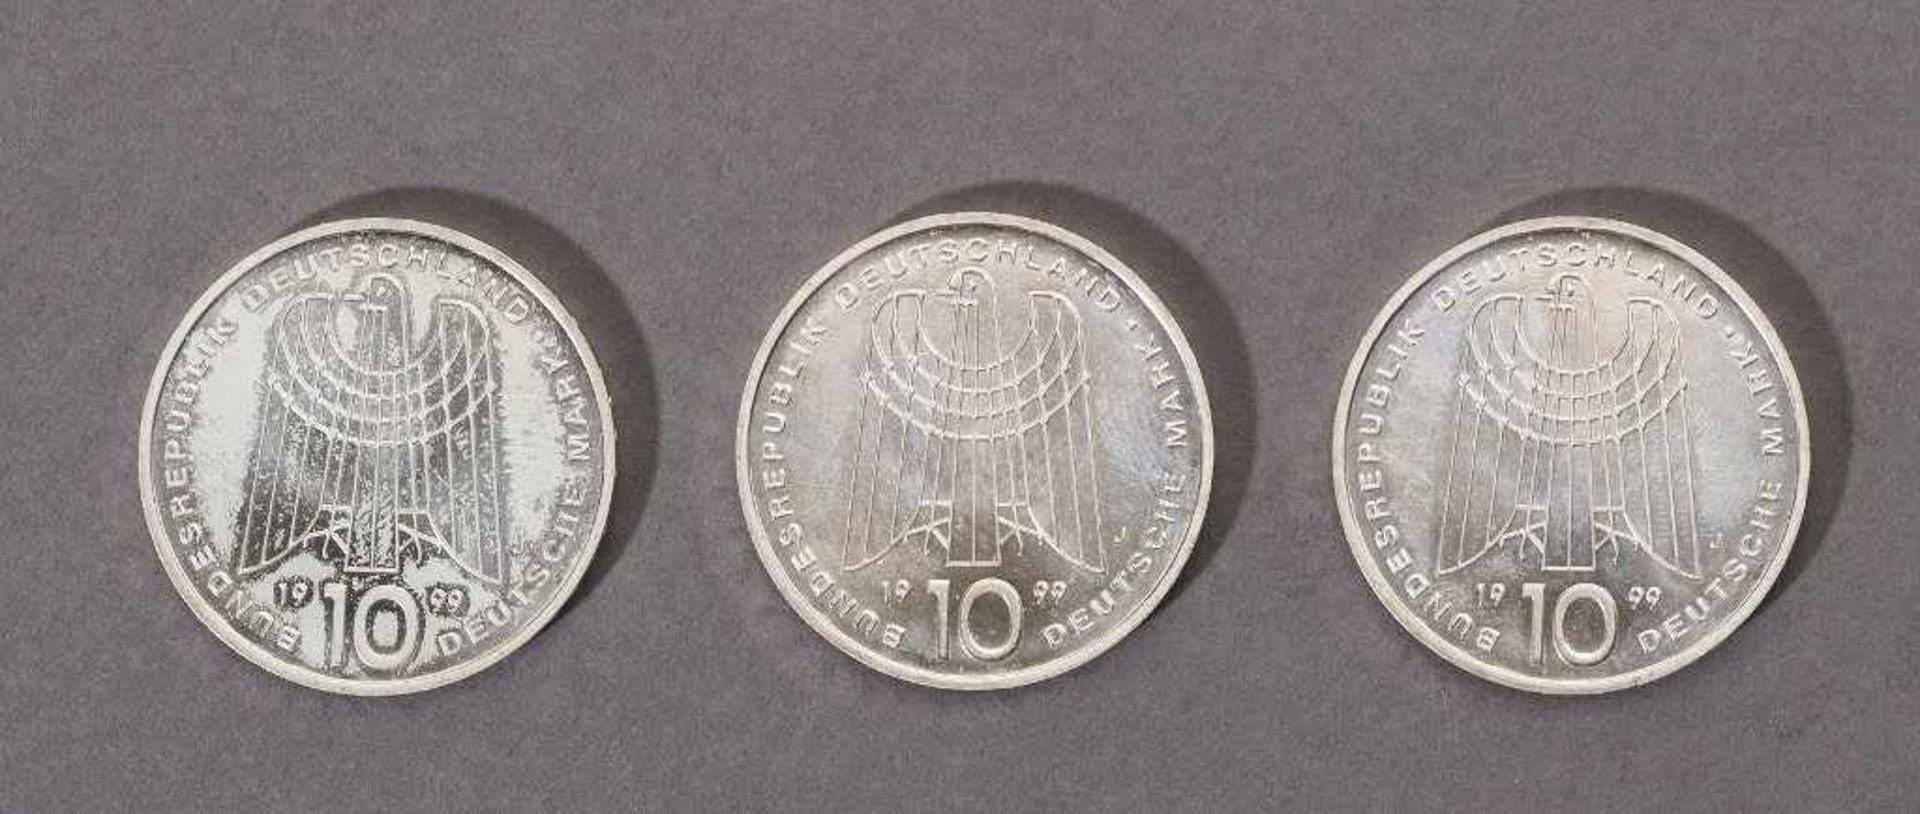 10 Deutsche Mark. - Bild 2 aus 2